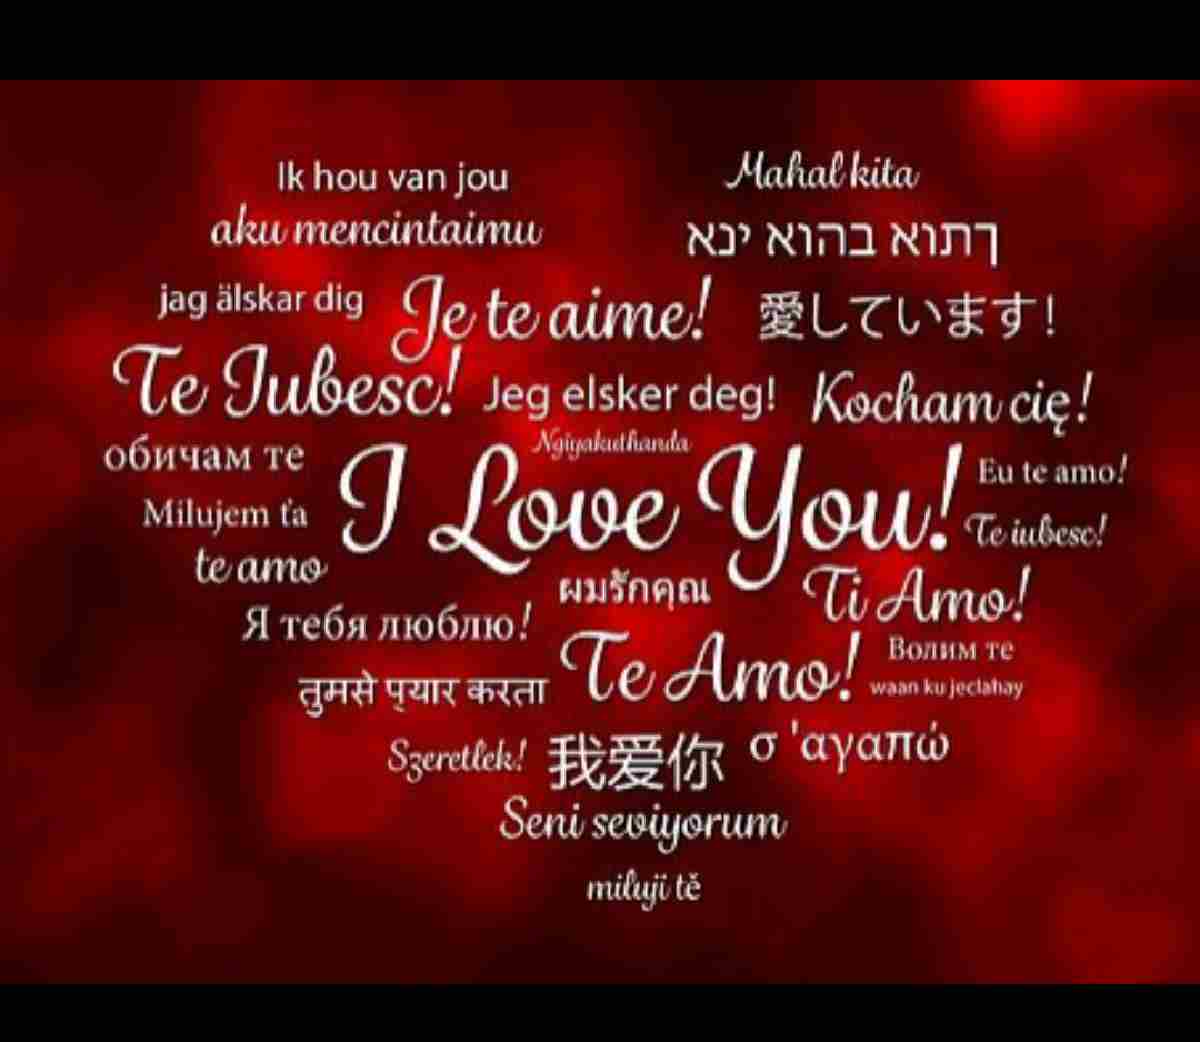 I love you in Portuguese